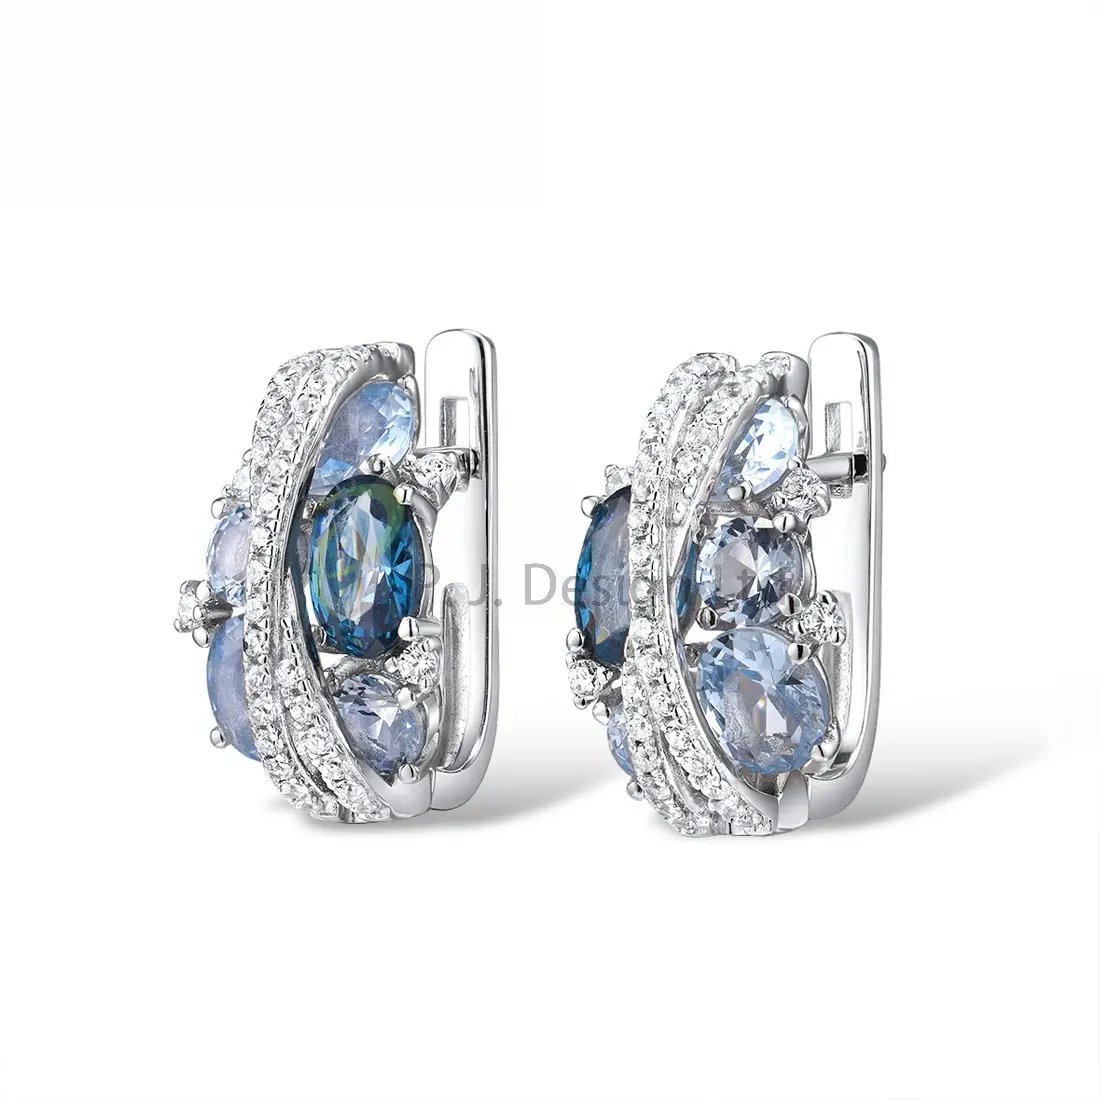 למעלה איכות מתמחה כחול צבע טבעת לנשים 925 סטרלינג כסף לבן CZ תכשיטי ליום נישואים